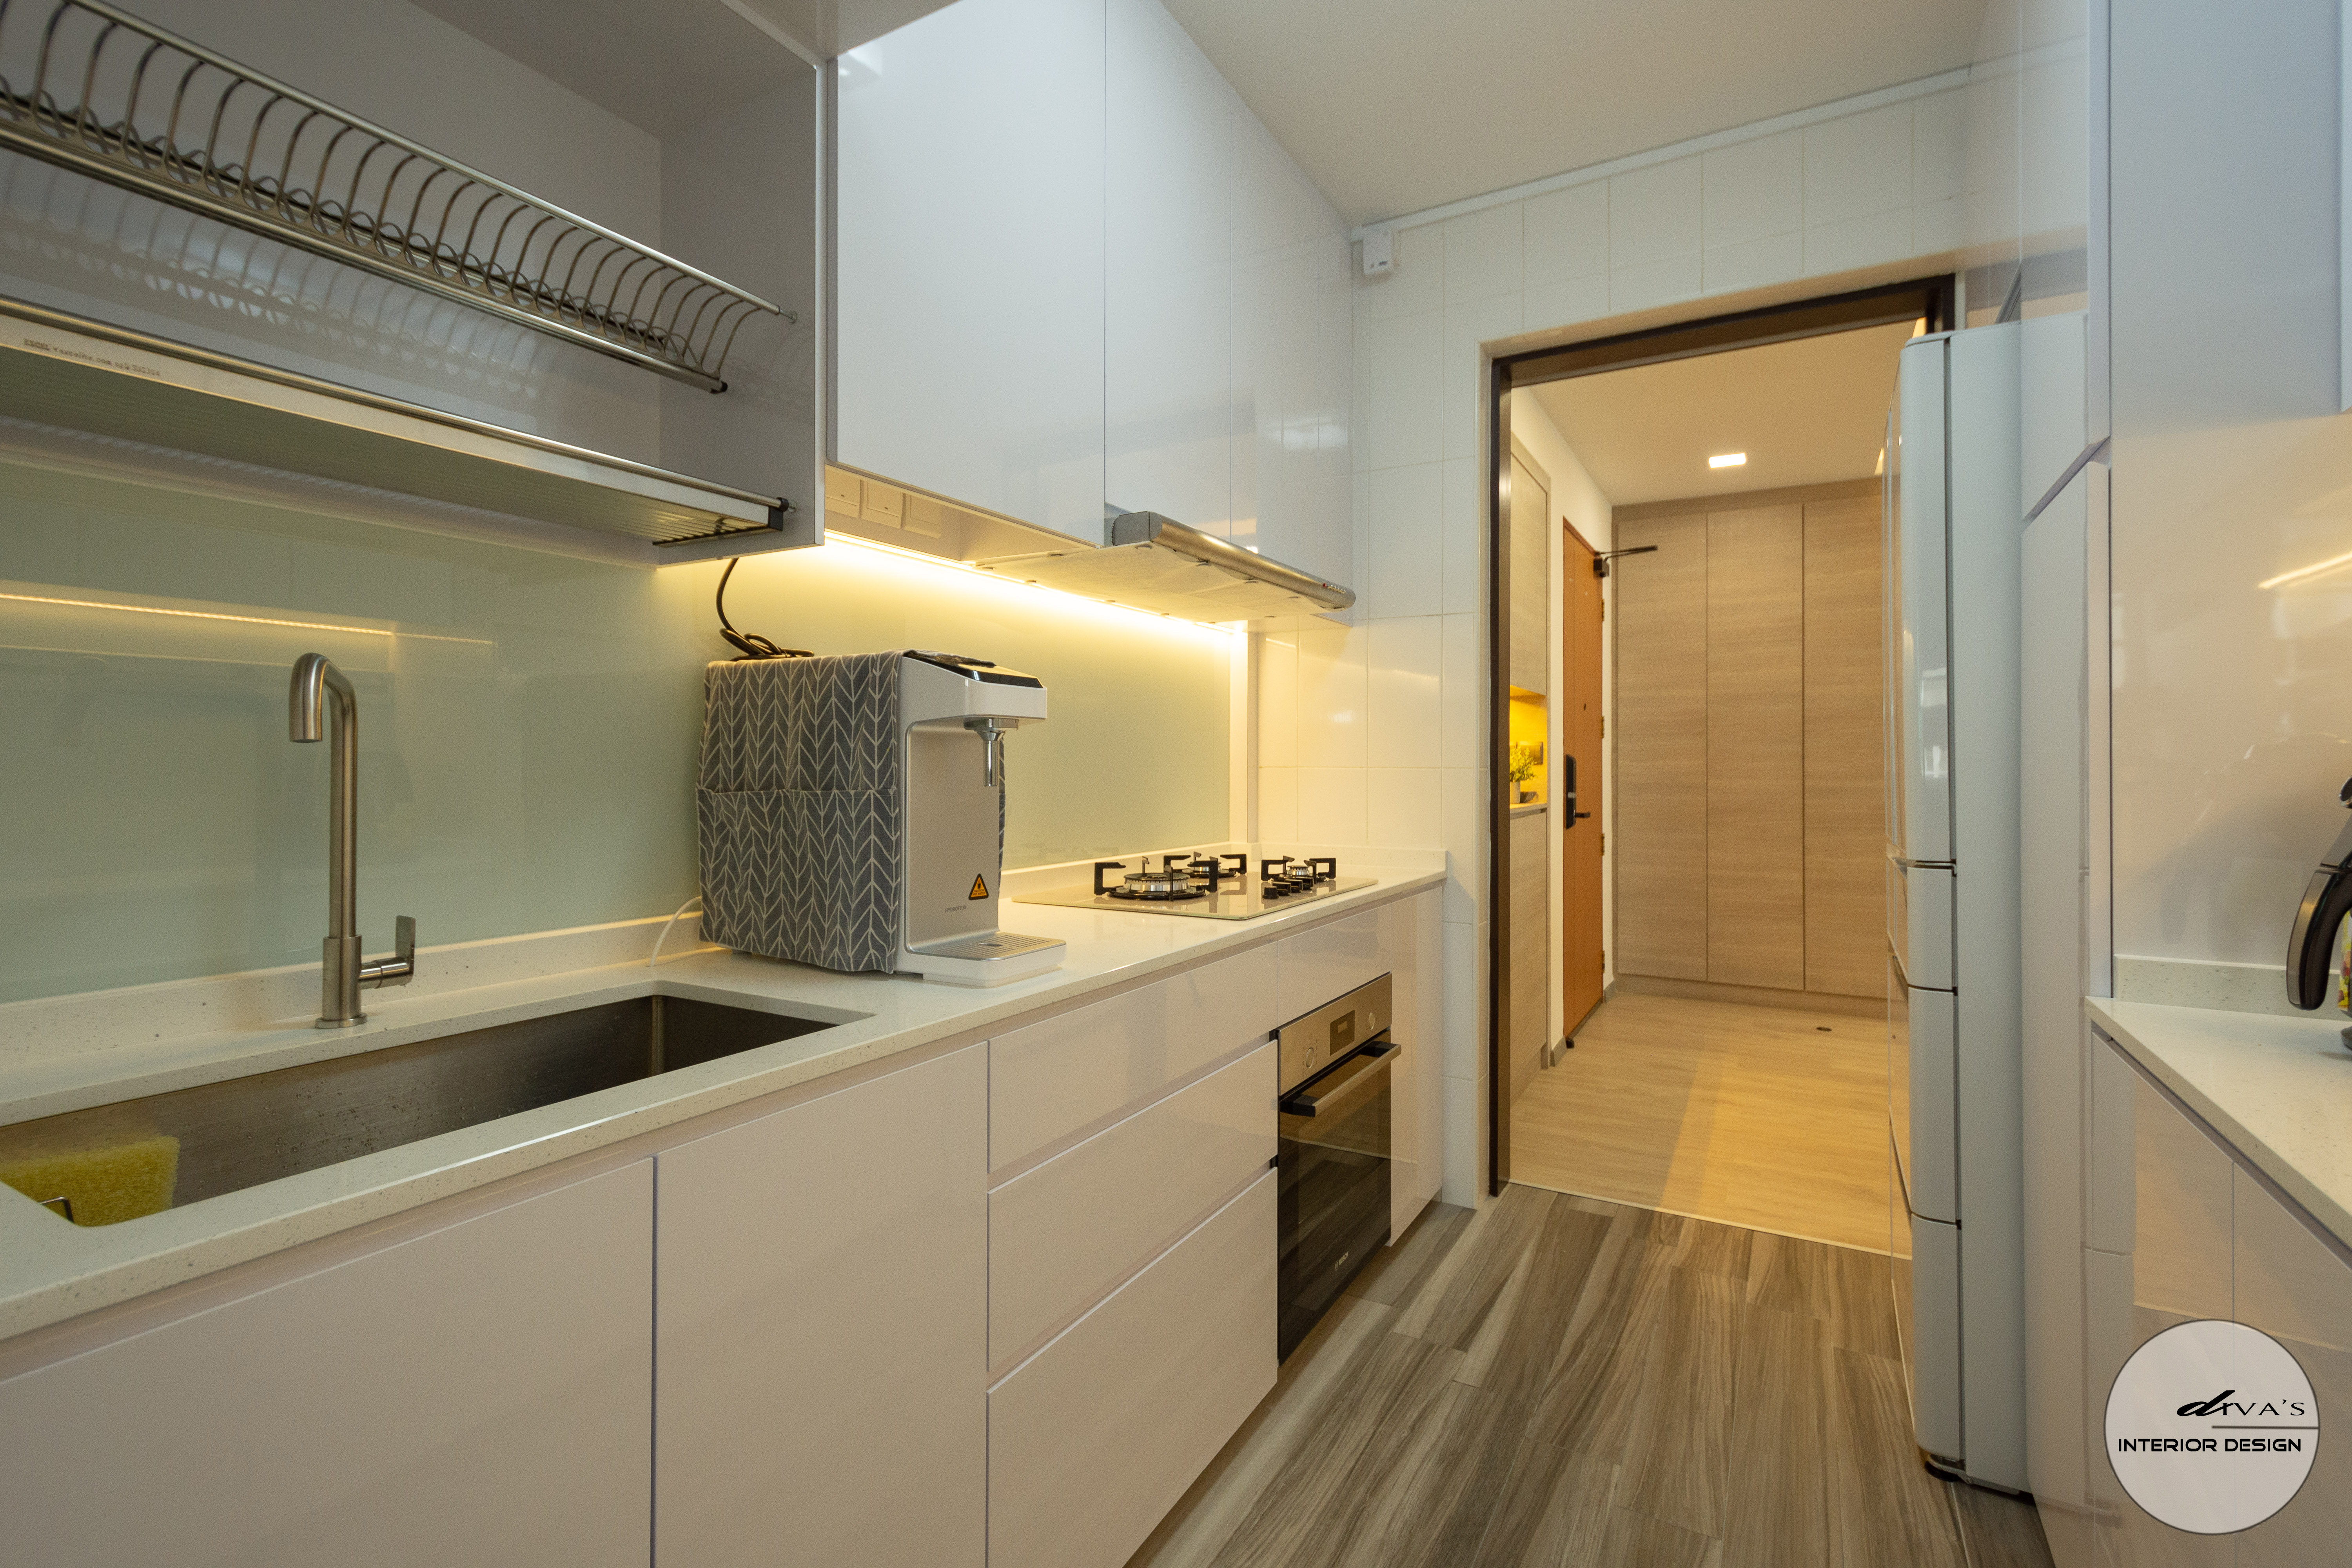 Small Kitchen Design In Singapore   Diva's Interior Design